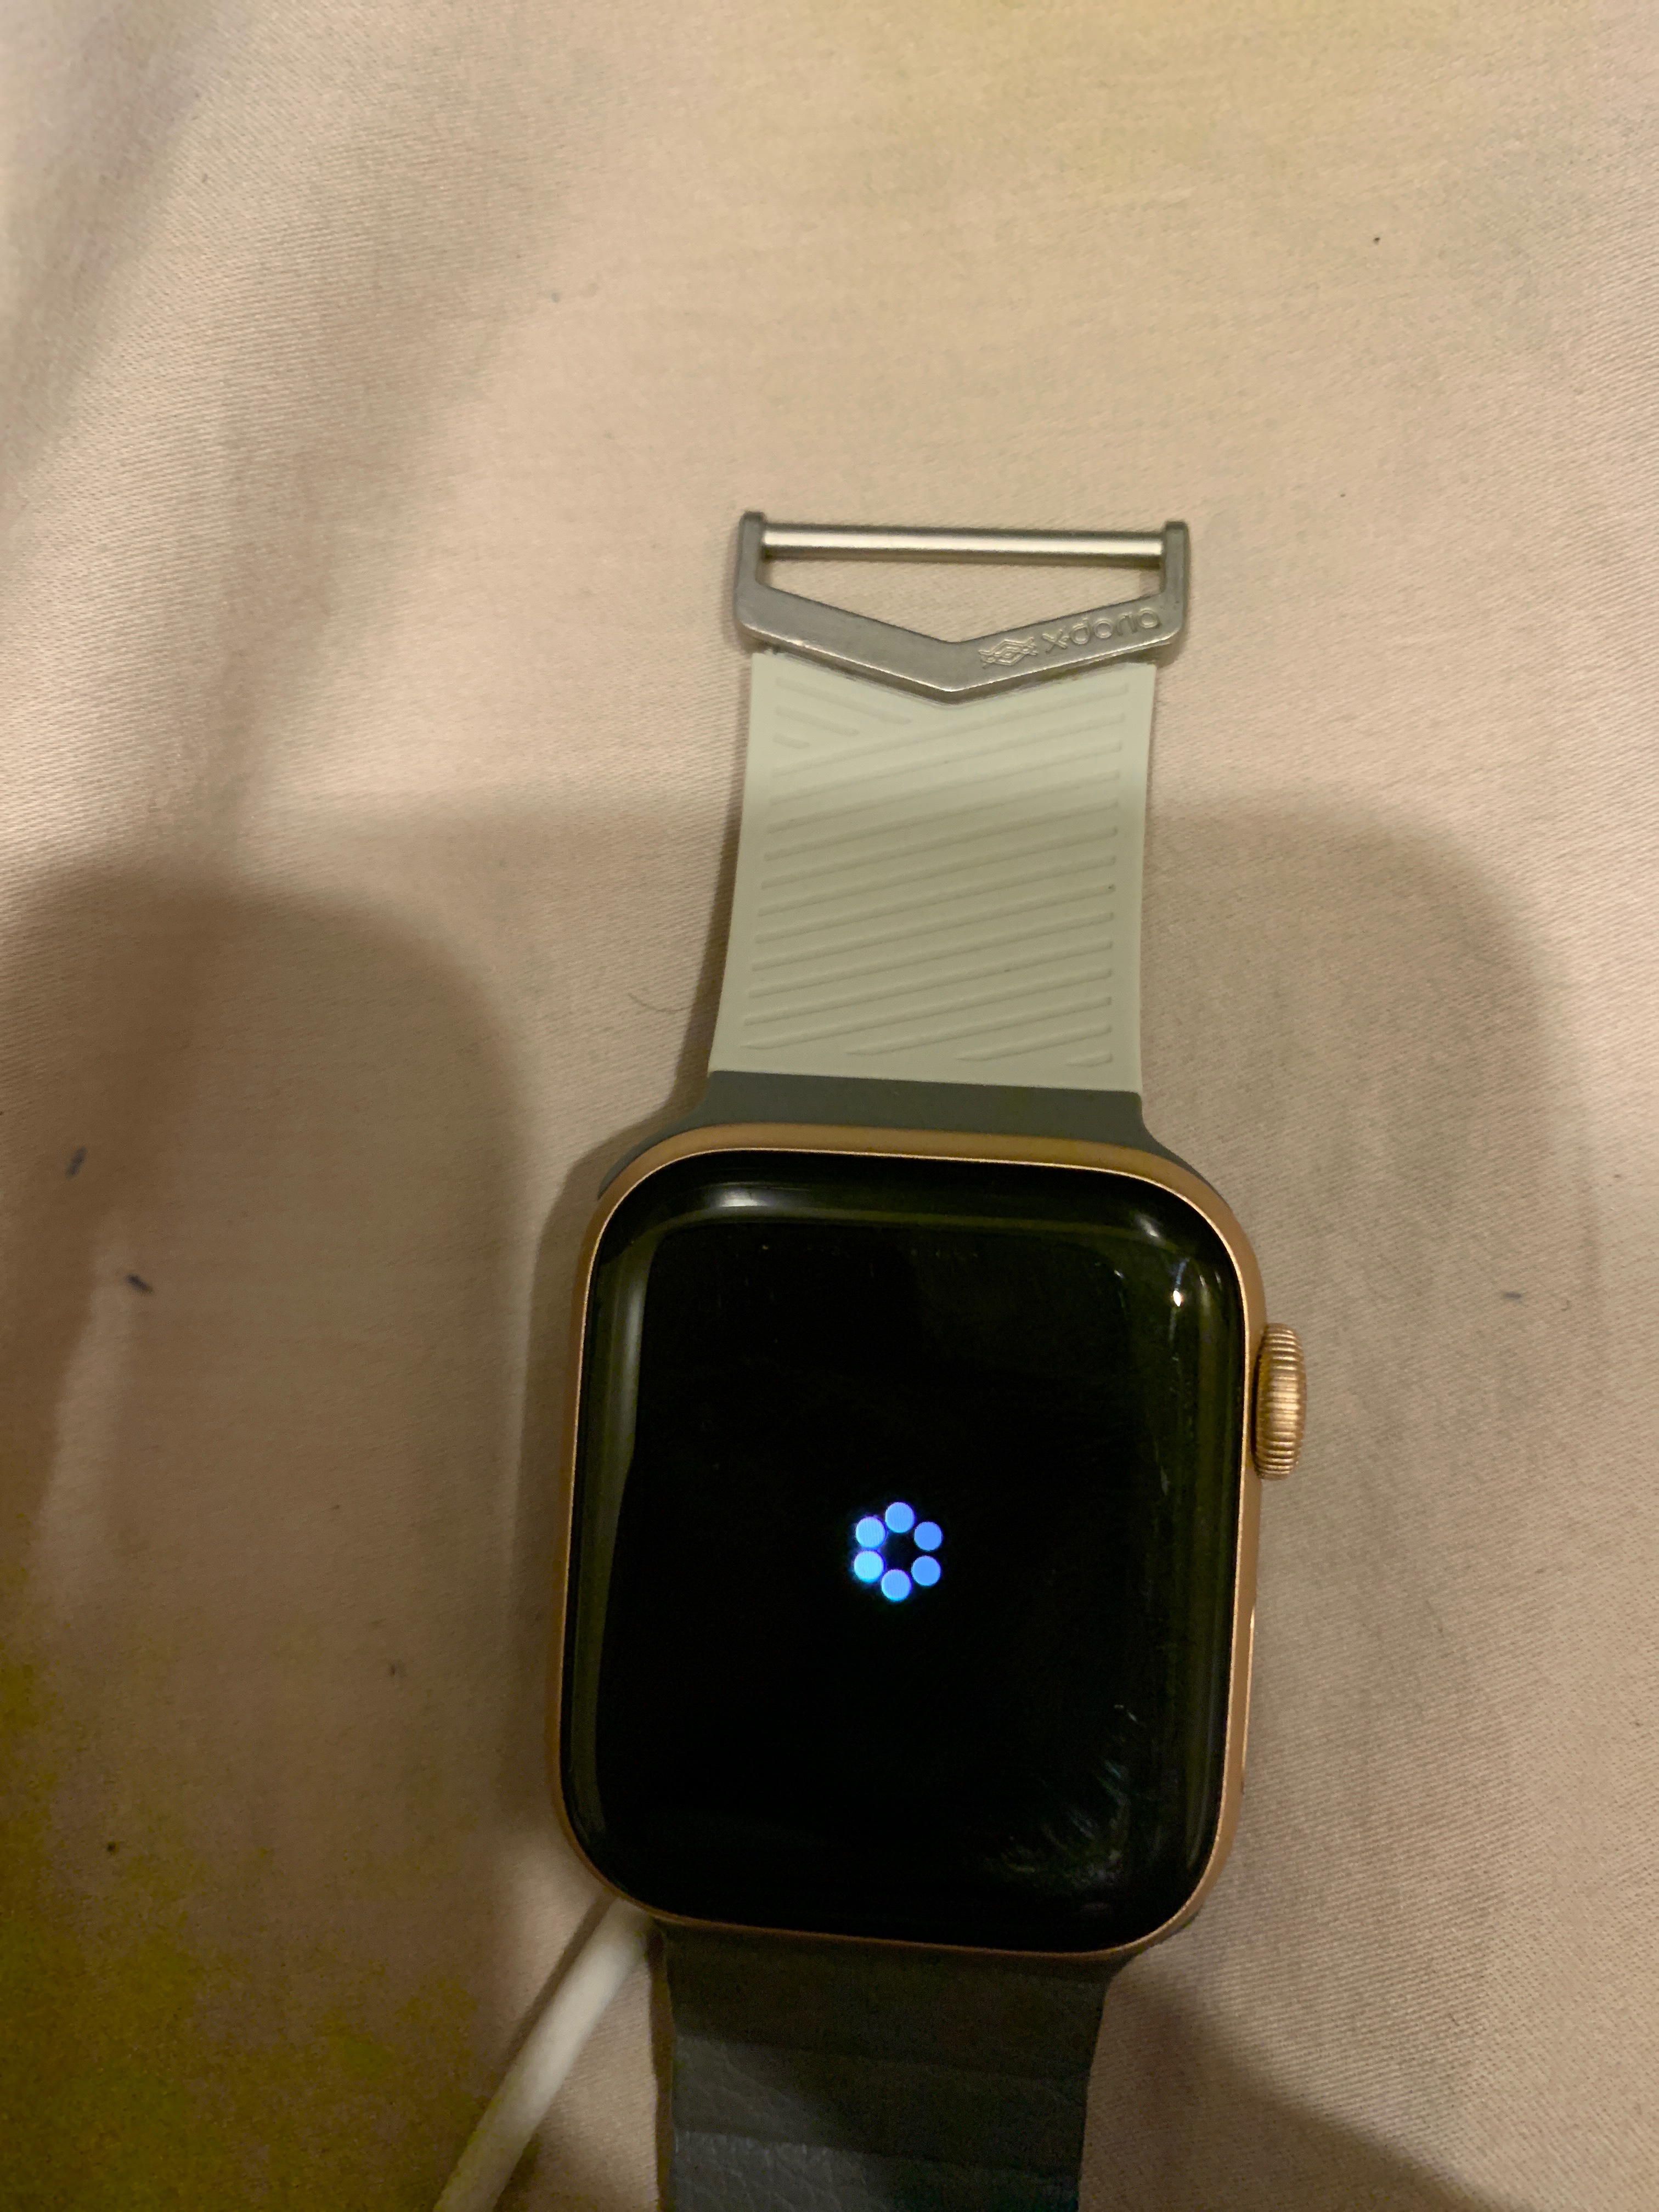 My friend gave me an Apple Watch but it’s… - Apple Community